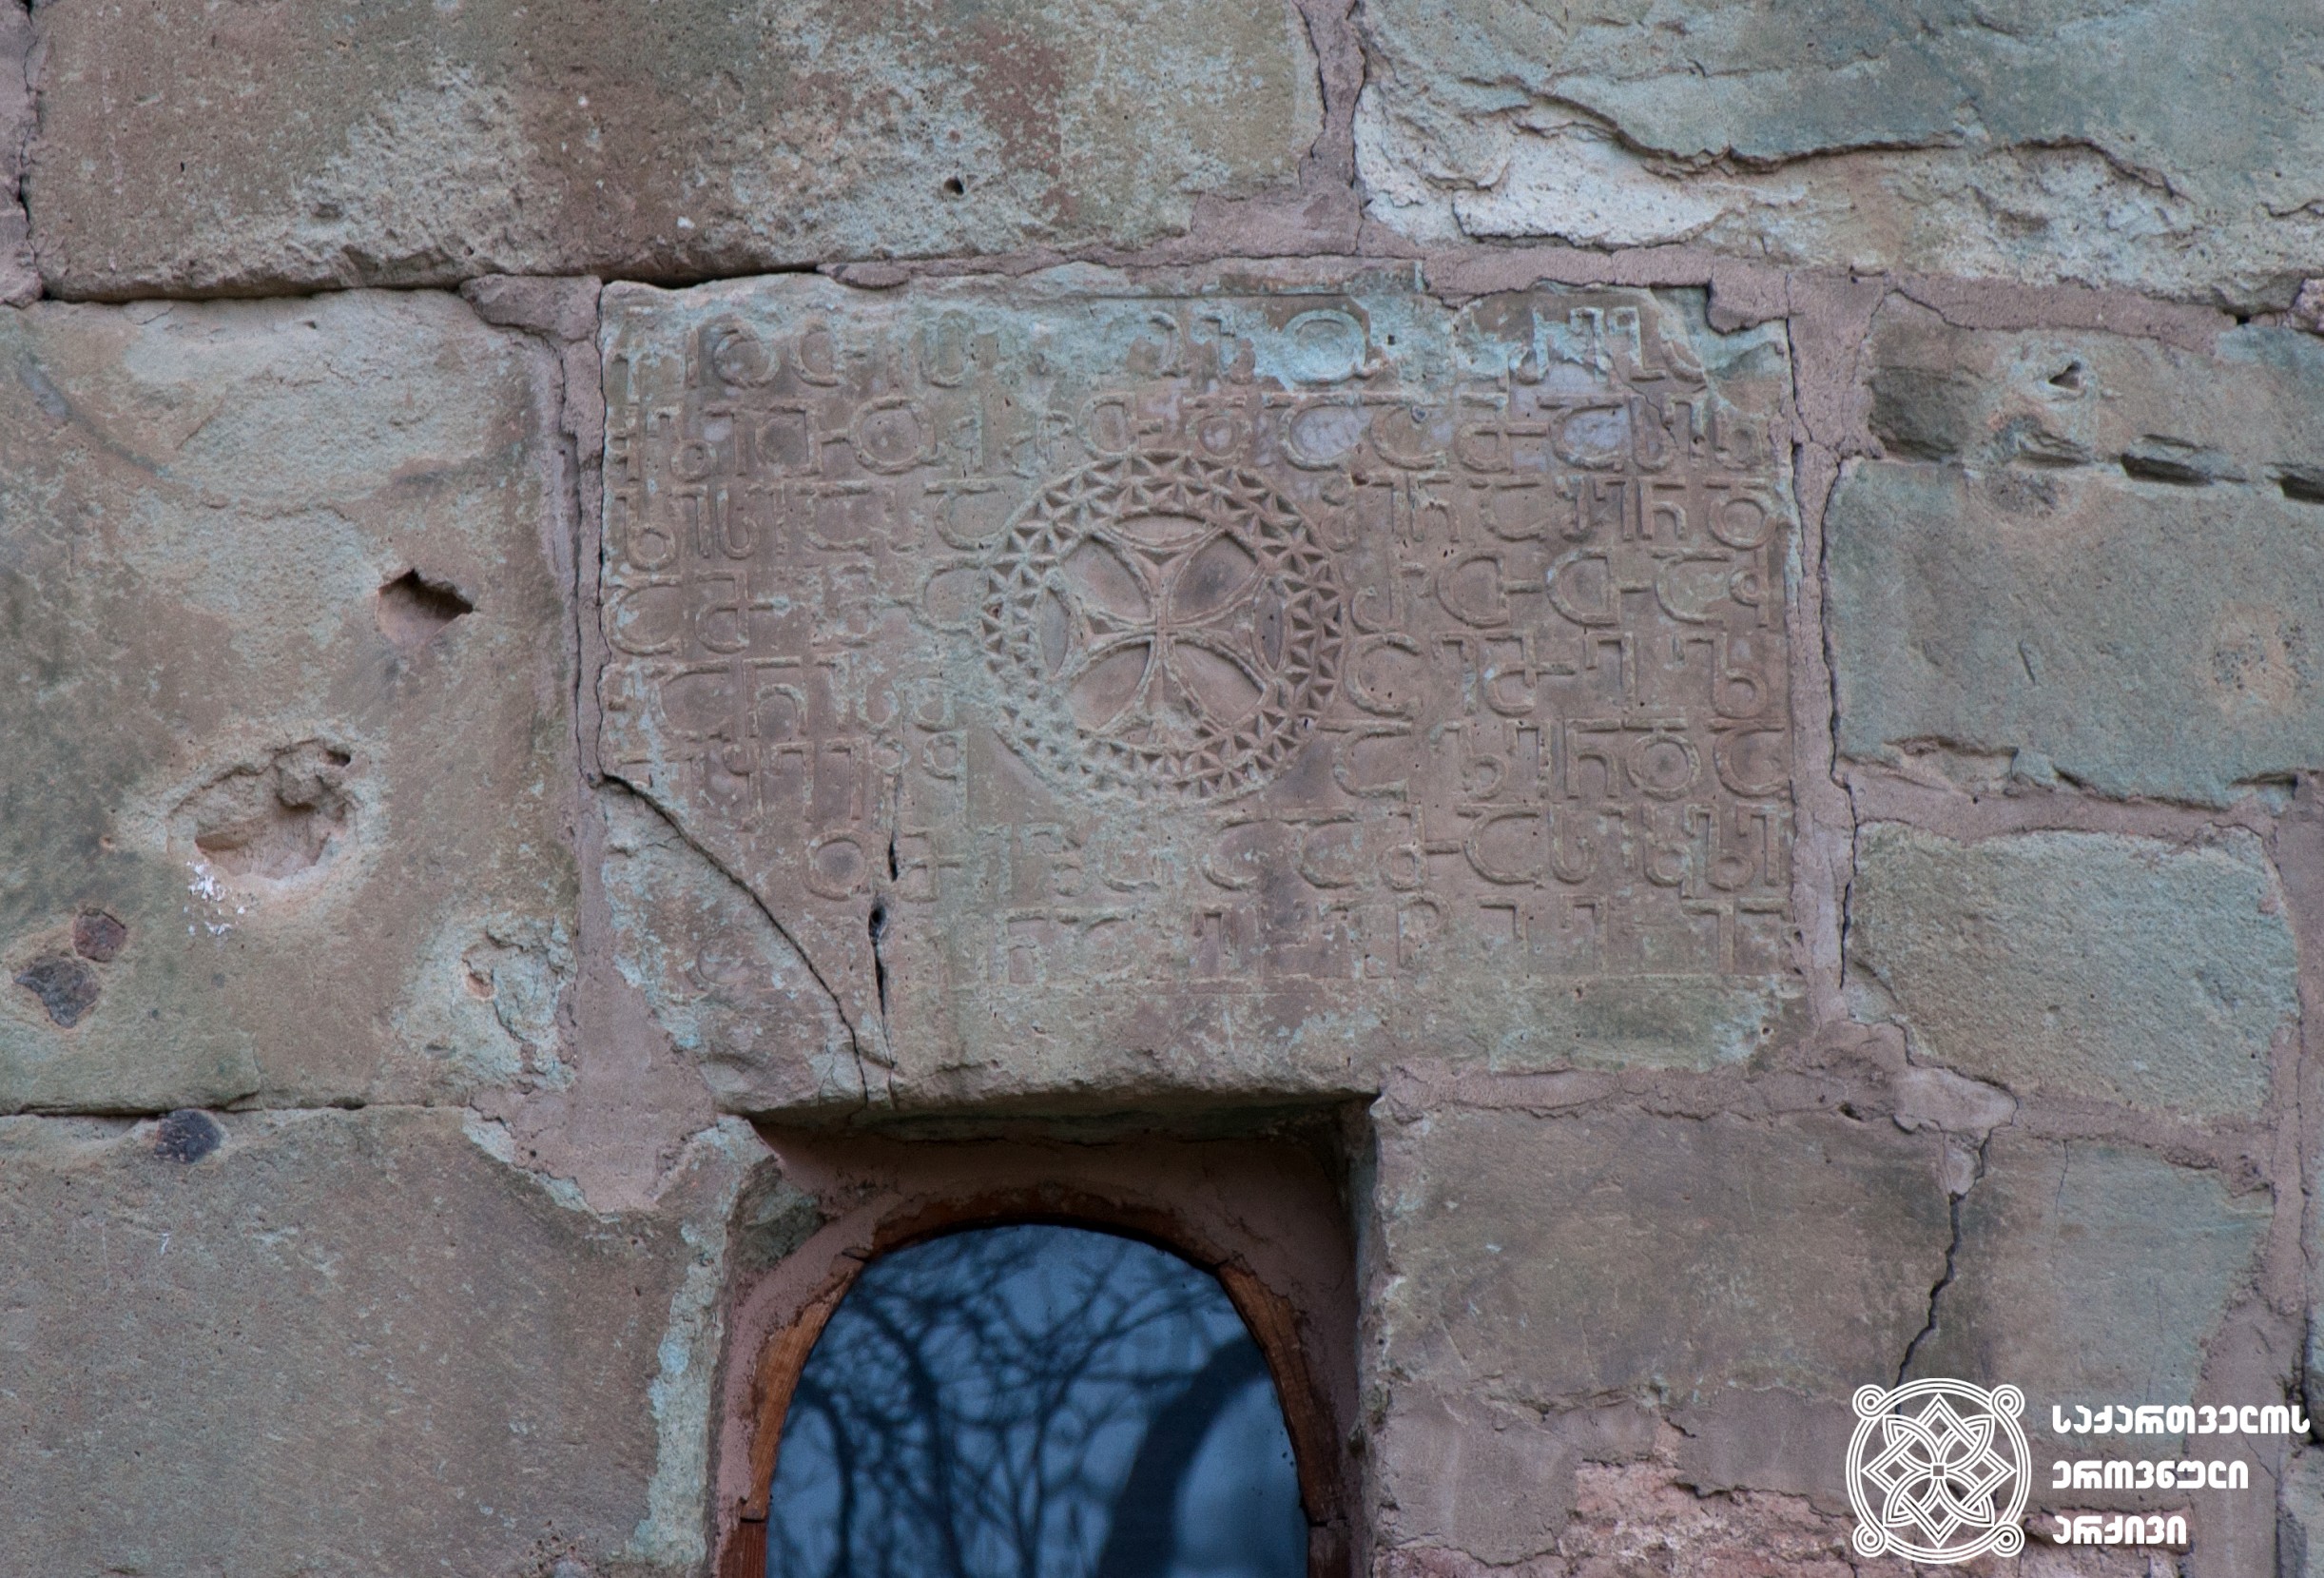 ბოლნური ჯვარი და დავით ეპისკოპოსის ასომთავრული წარწერა, ქართული დამწერლობის ერთ-ერთი უძველესი ნიმუში. ბოლნისის სიონის ტაძარი, აღმოსავლეთის კედელი, V საუკუნე<br>
The Bolnisi Cross and the asomtavruli inscription of Bishop David. The inscription represents one of the oldest samples of the Georgian scripts. Bolnisi Sioni Church, the eastern wall, 5th century